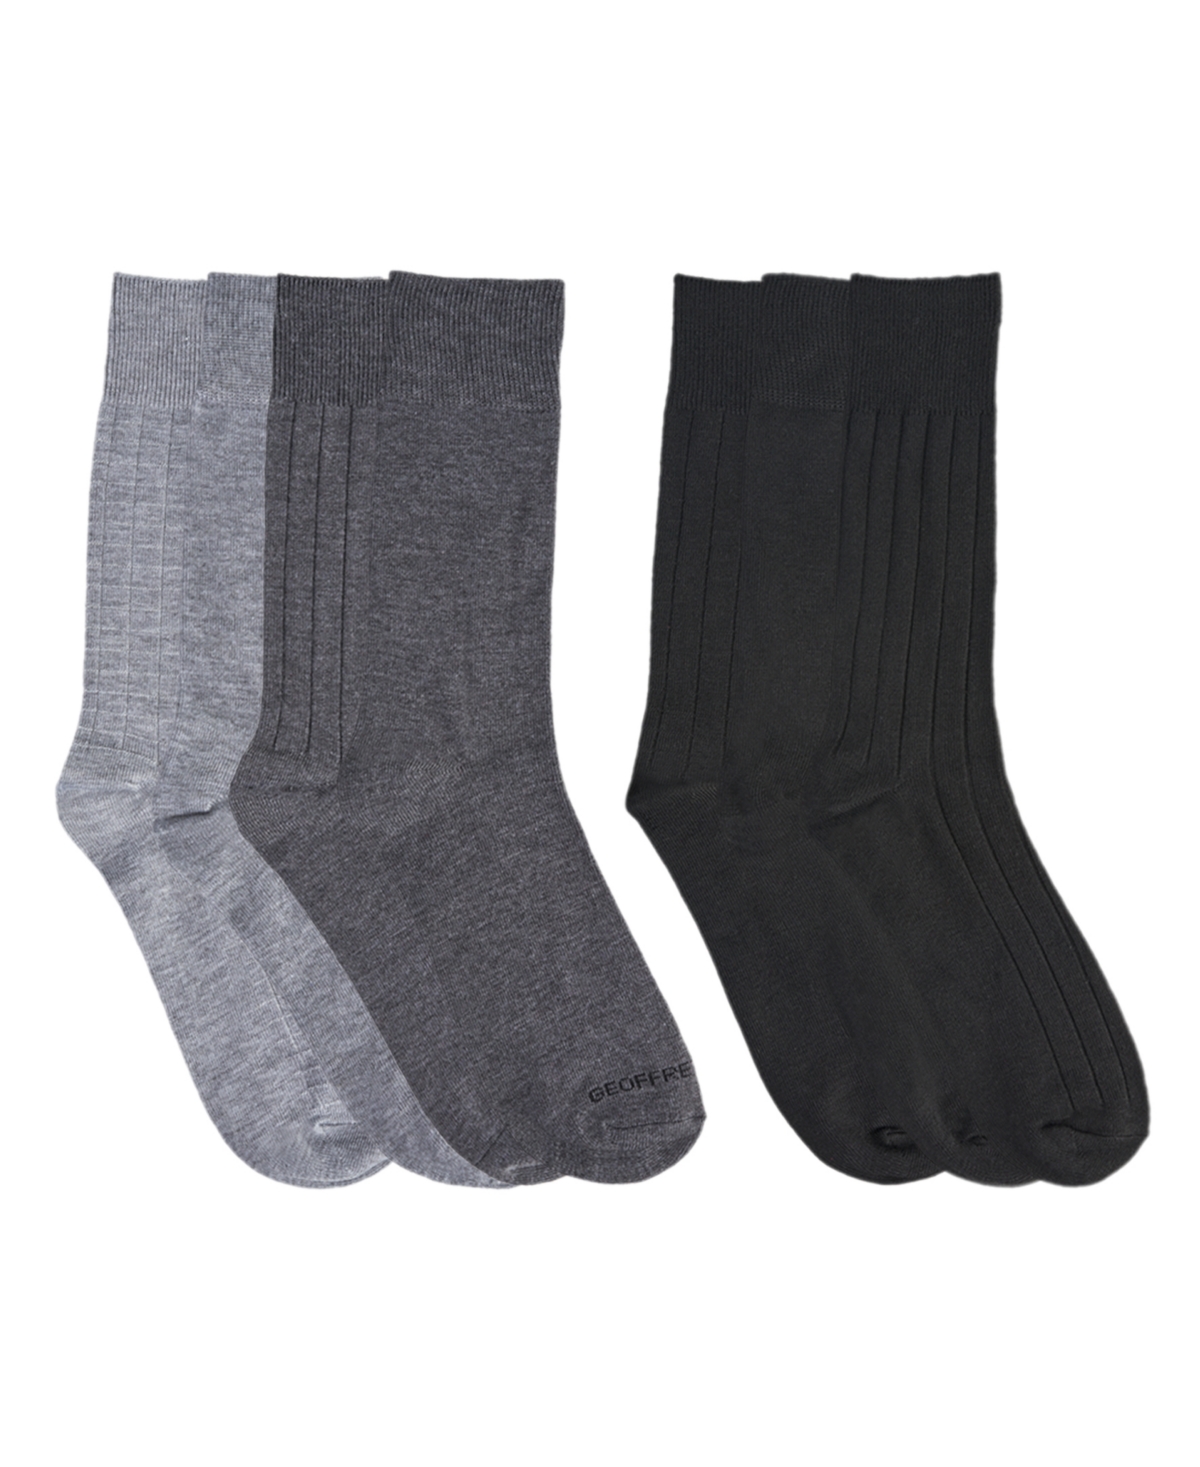 Men's Dress Crew Socks, Pack of 7 - Black, Gray